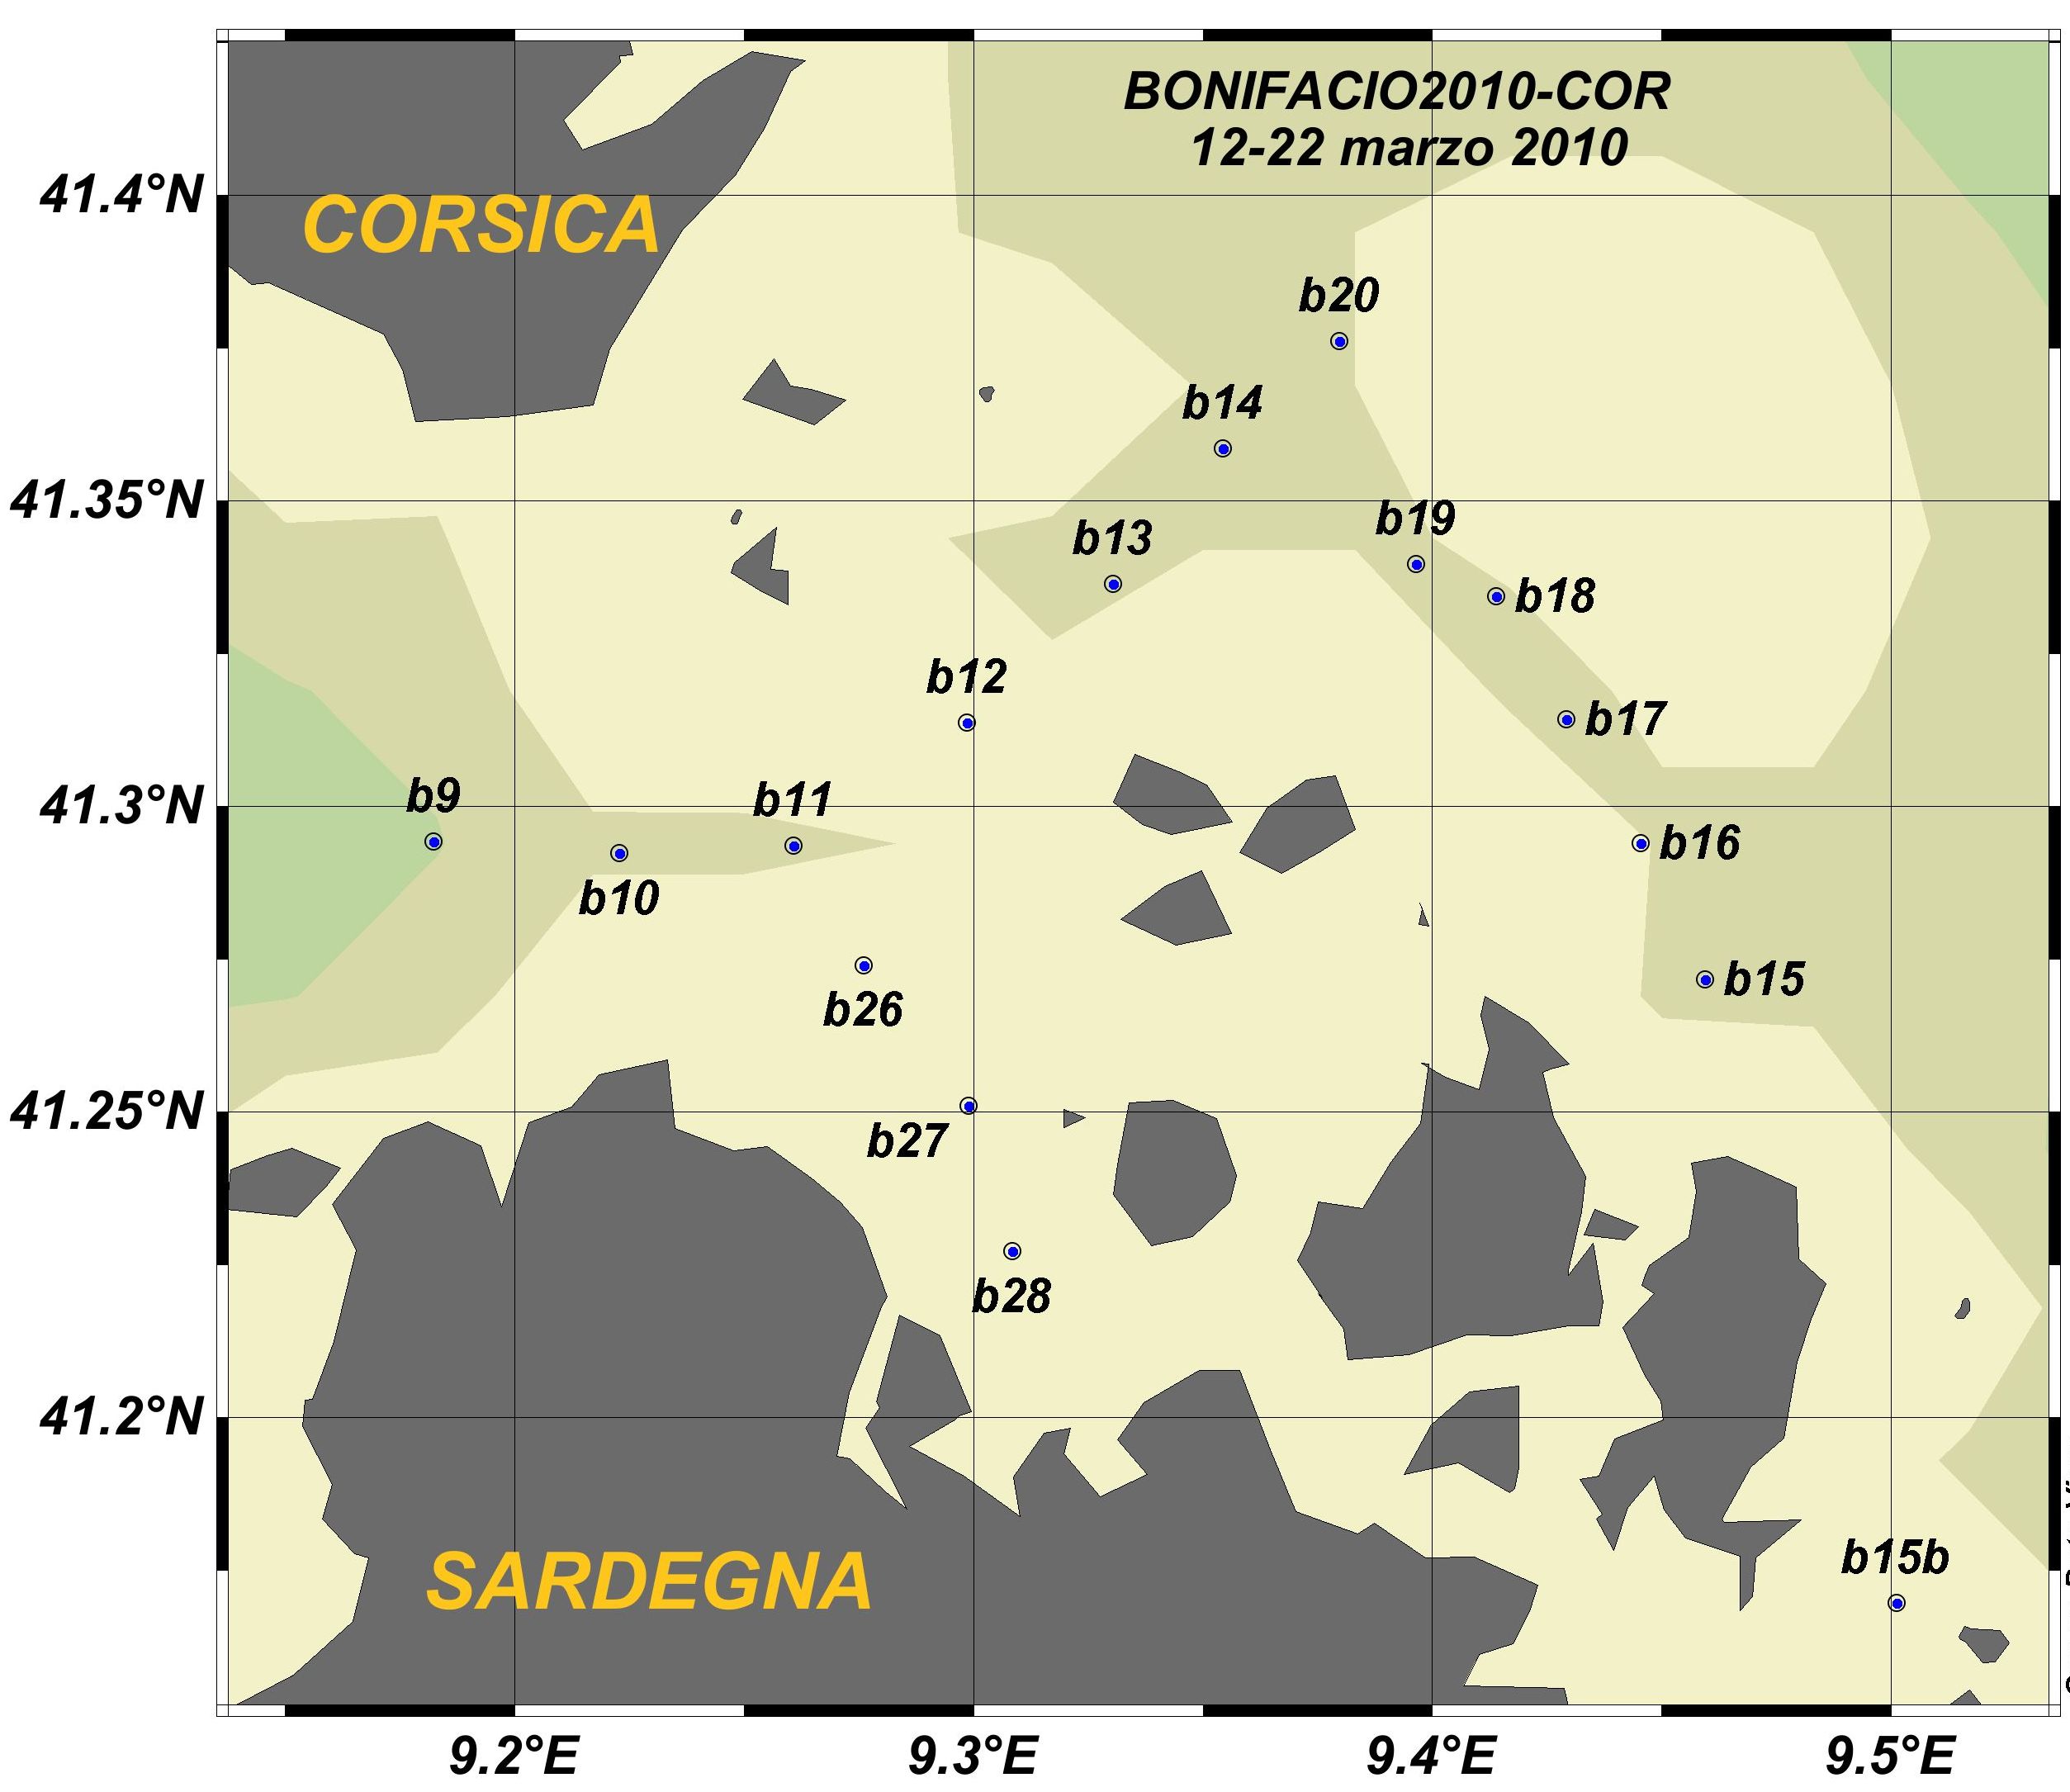 Bonifacio2010-Cor_Bonifacio_map